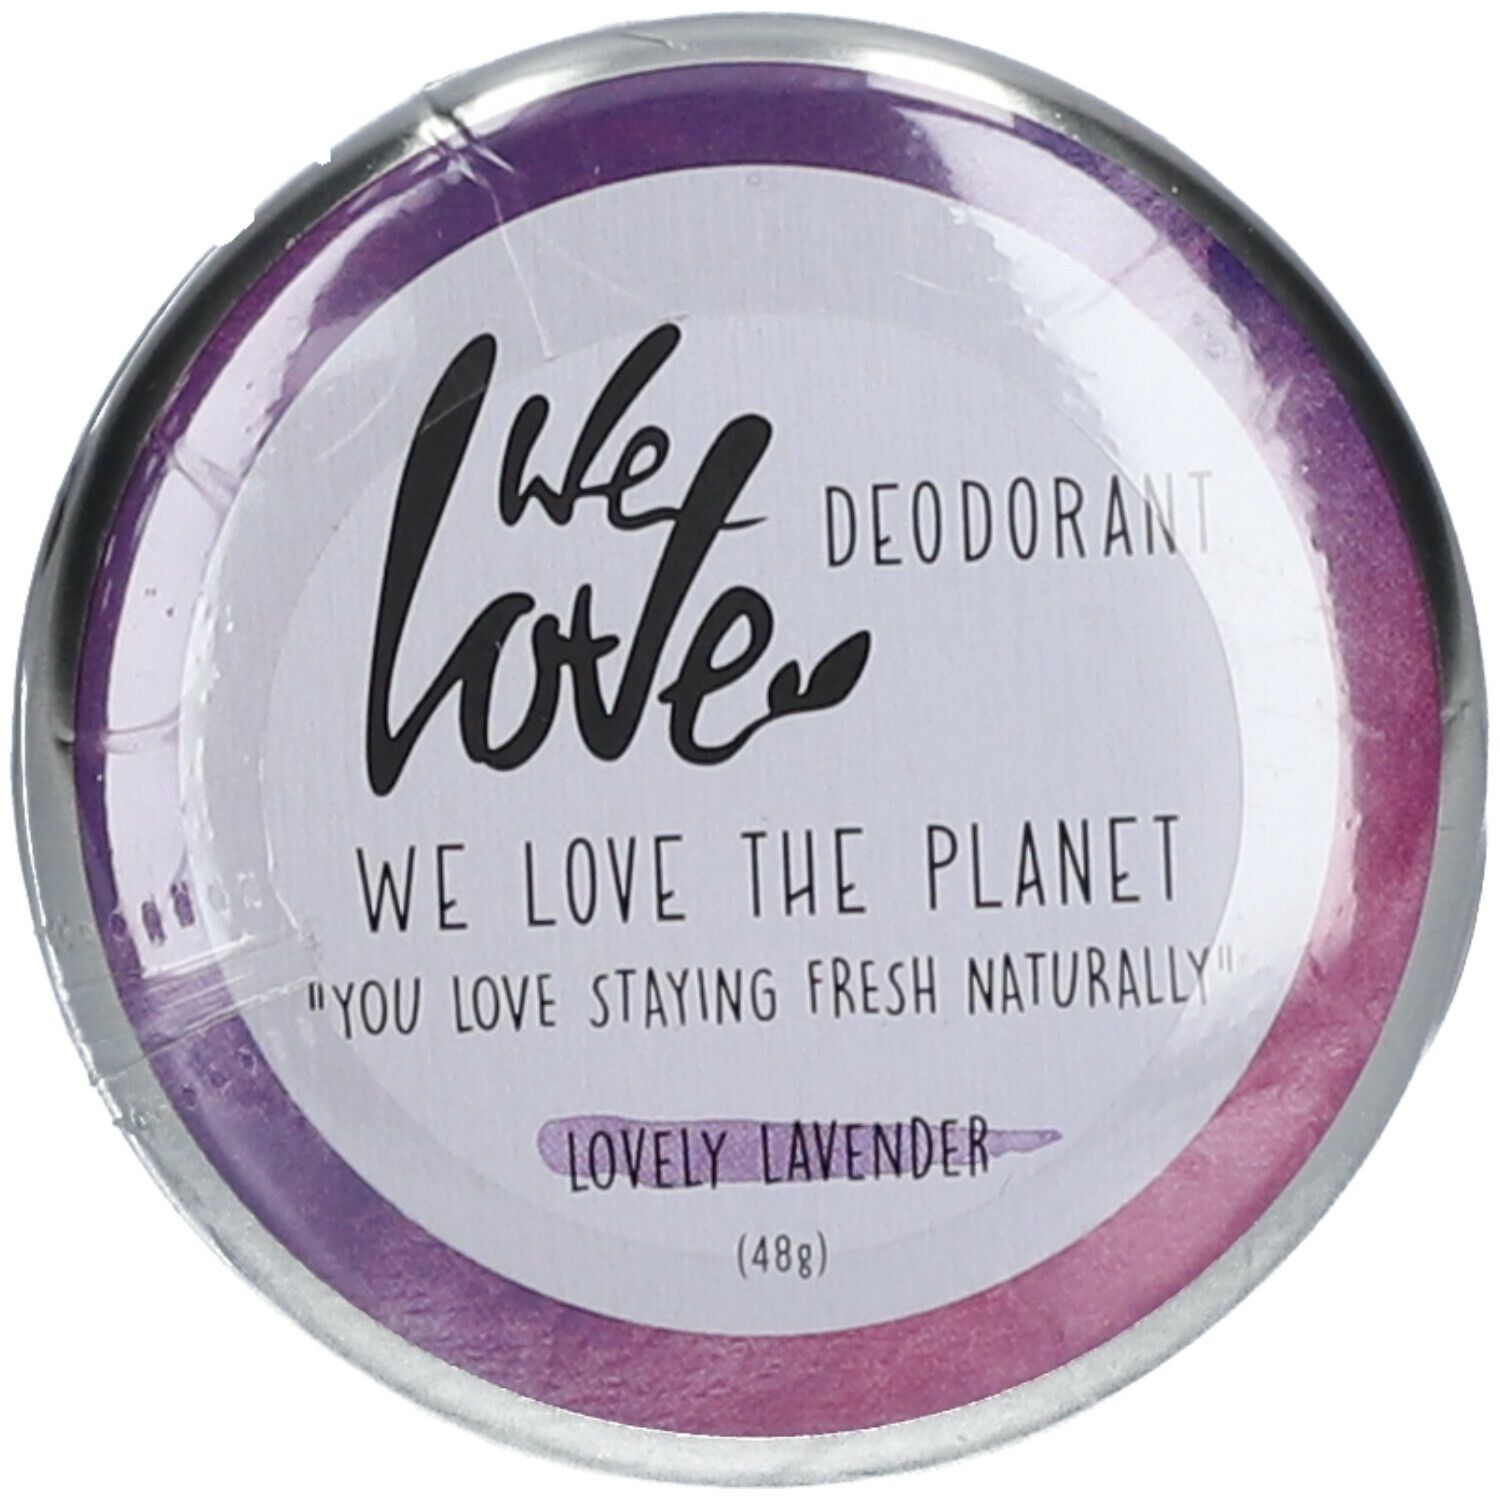 We love Deodorant Lovely Lavender